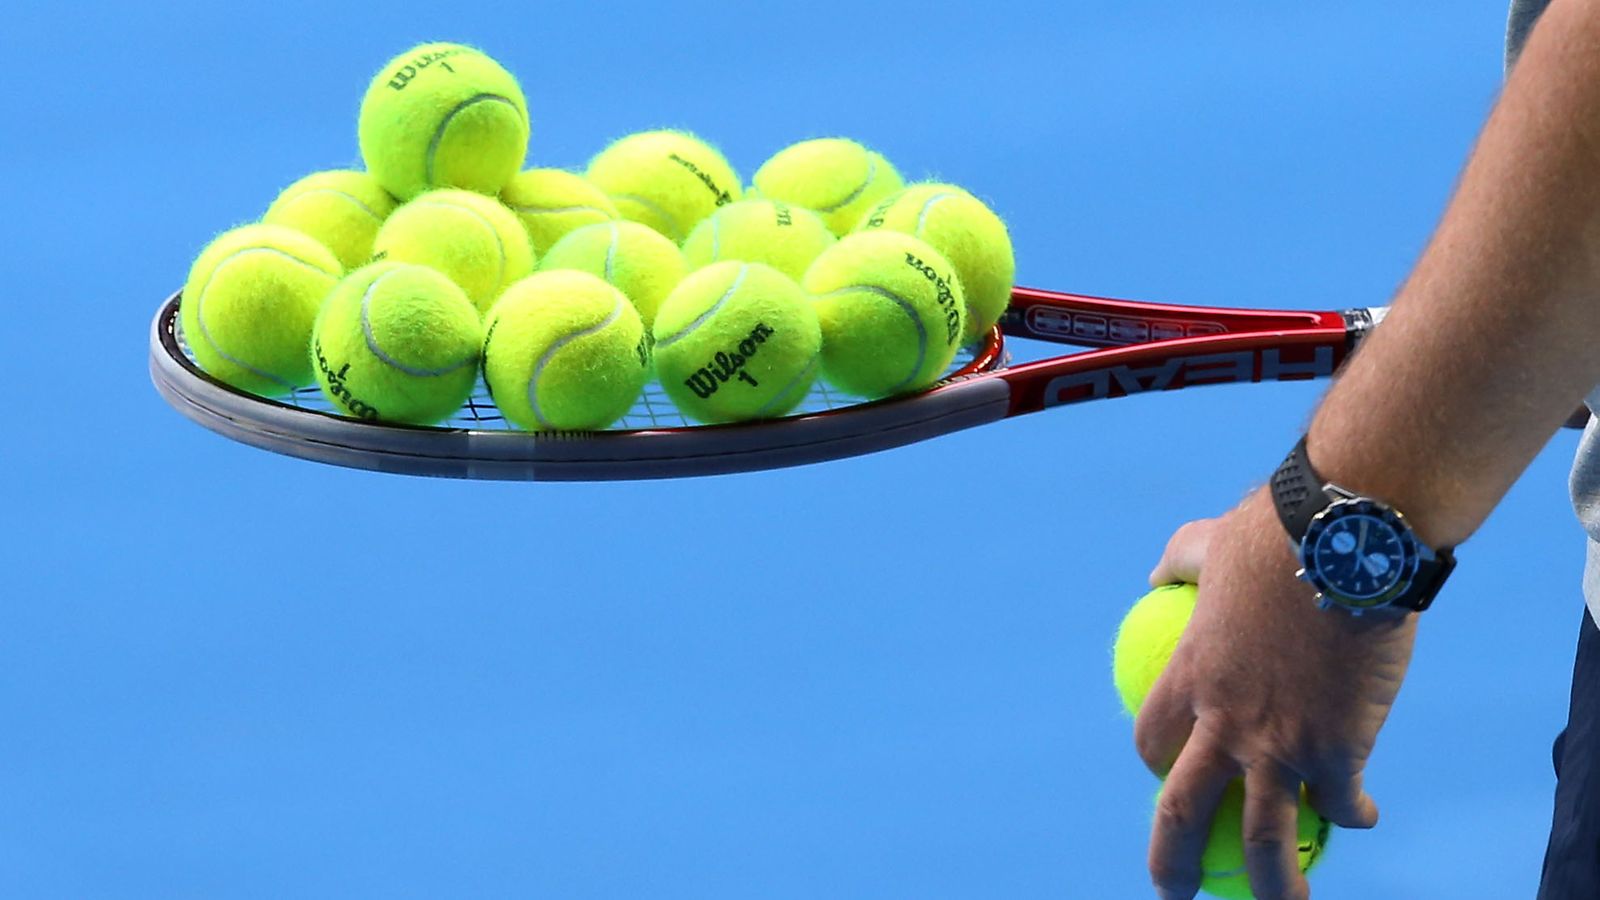 Useat suomalaiset tennispelaajat kokeneet seksuaalista häirintää – SUEK:n  selvityksen tulokset julki 